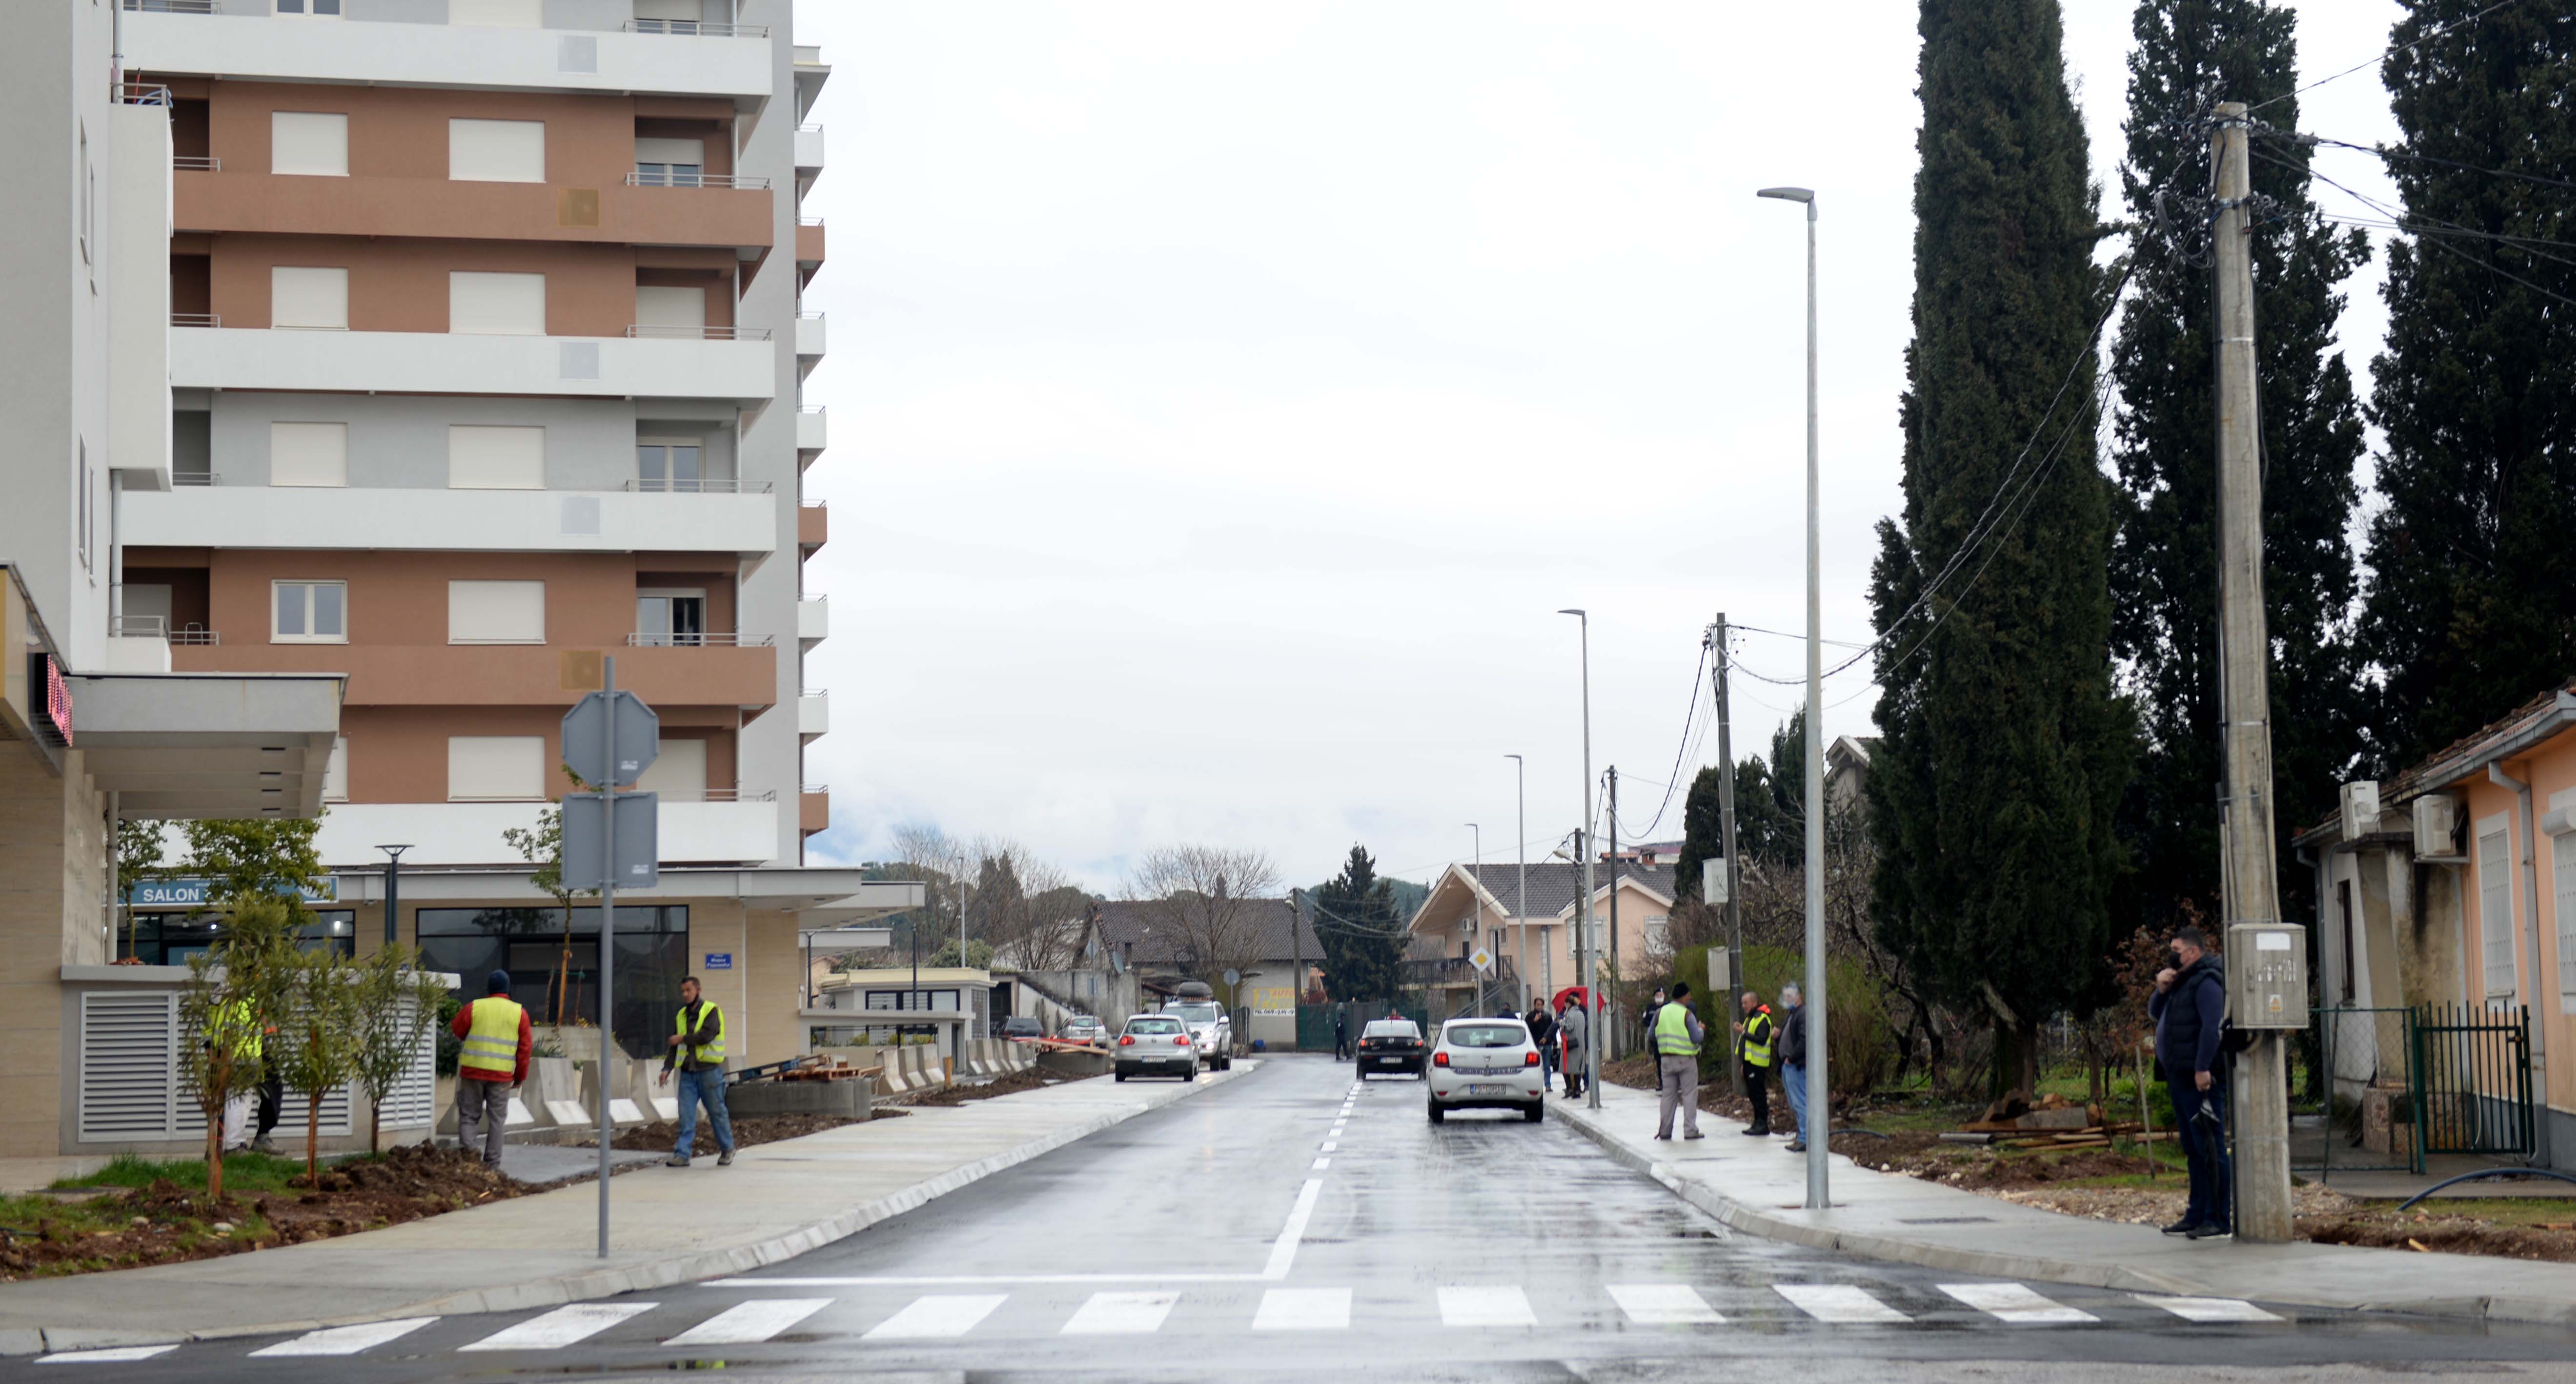 Završena rekonstrukcija Ulice Arsenija Boljevića vrijedna 390.000 eura; Najkraća saobraćajna veza između Ankarskog bulevara i Ulice Marka Radovića dobila potpuno novi izgled